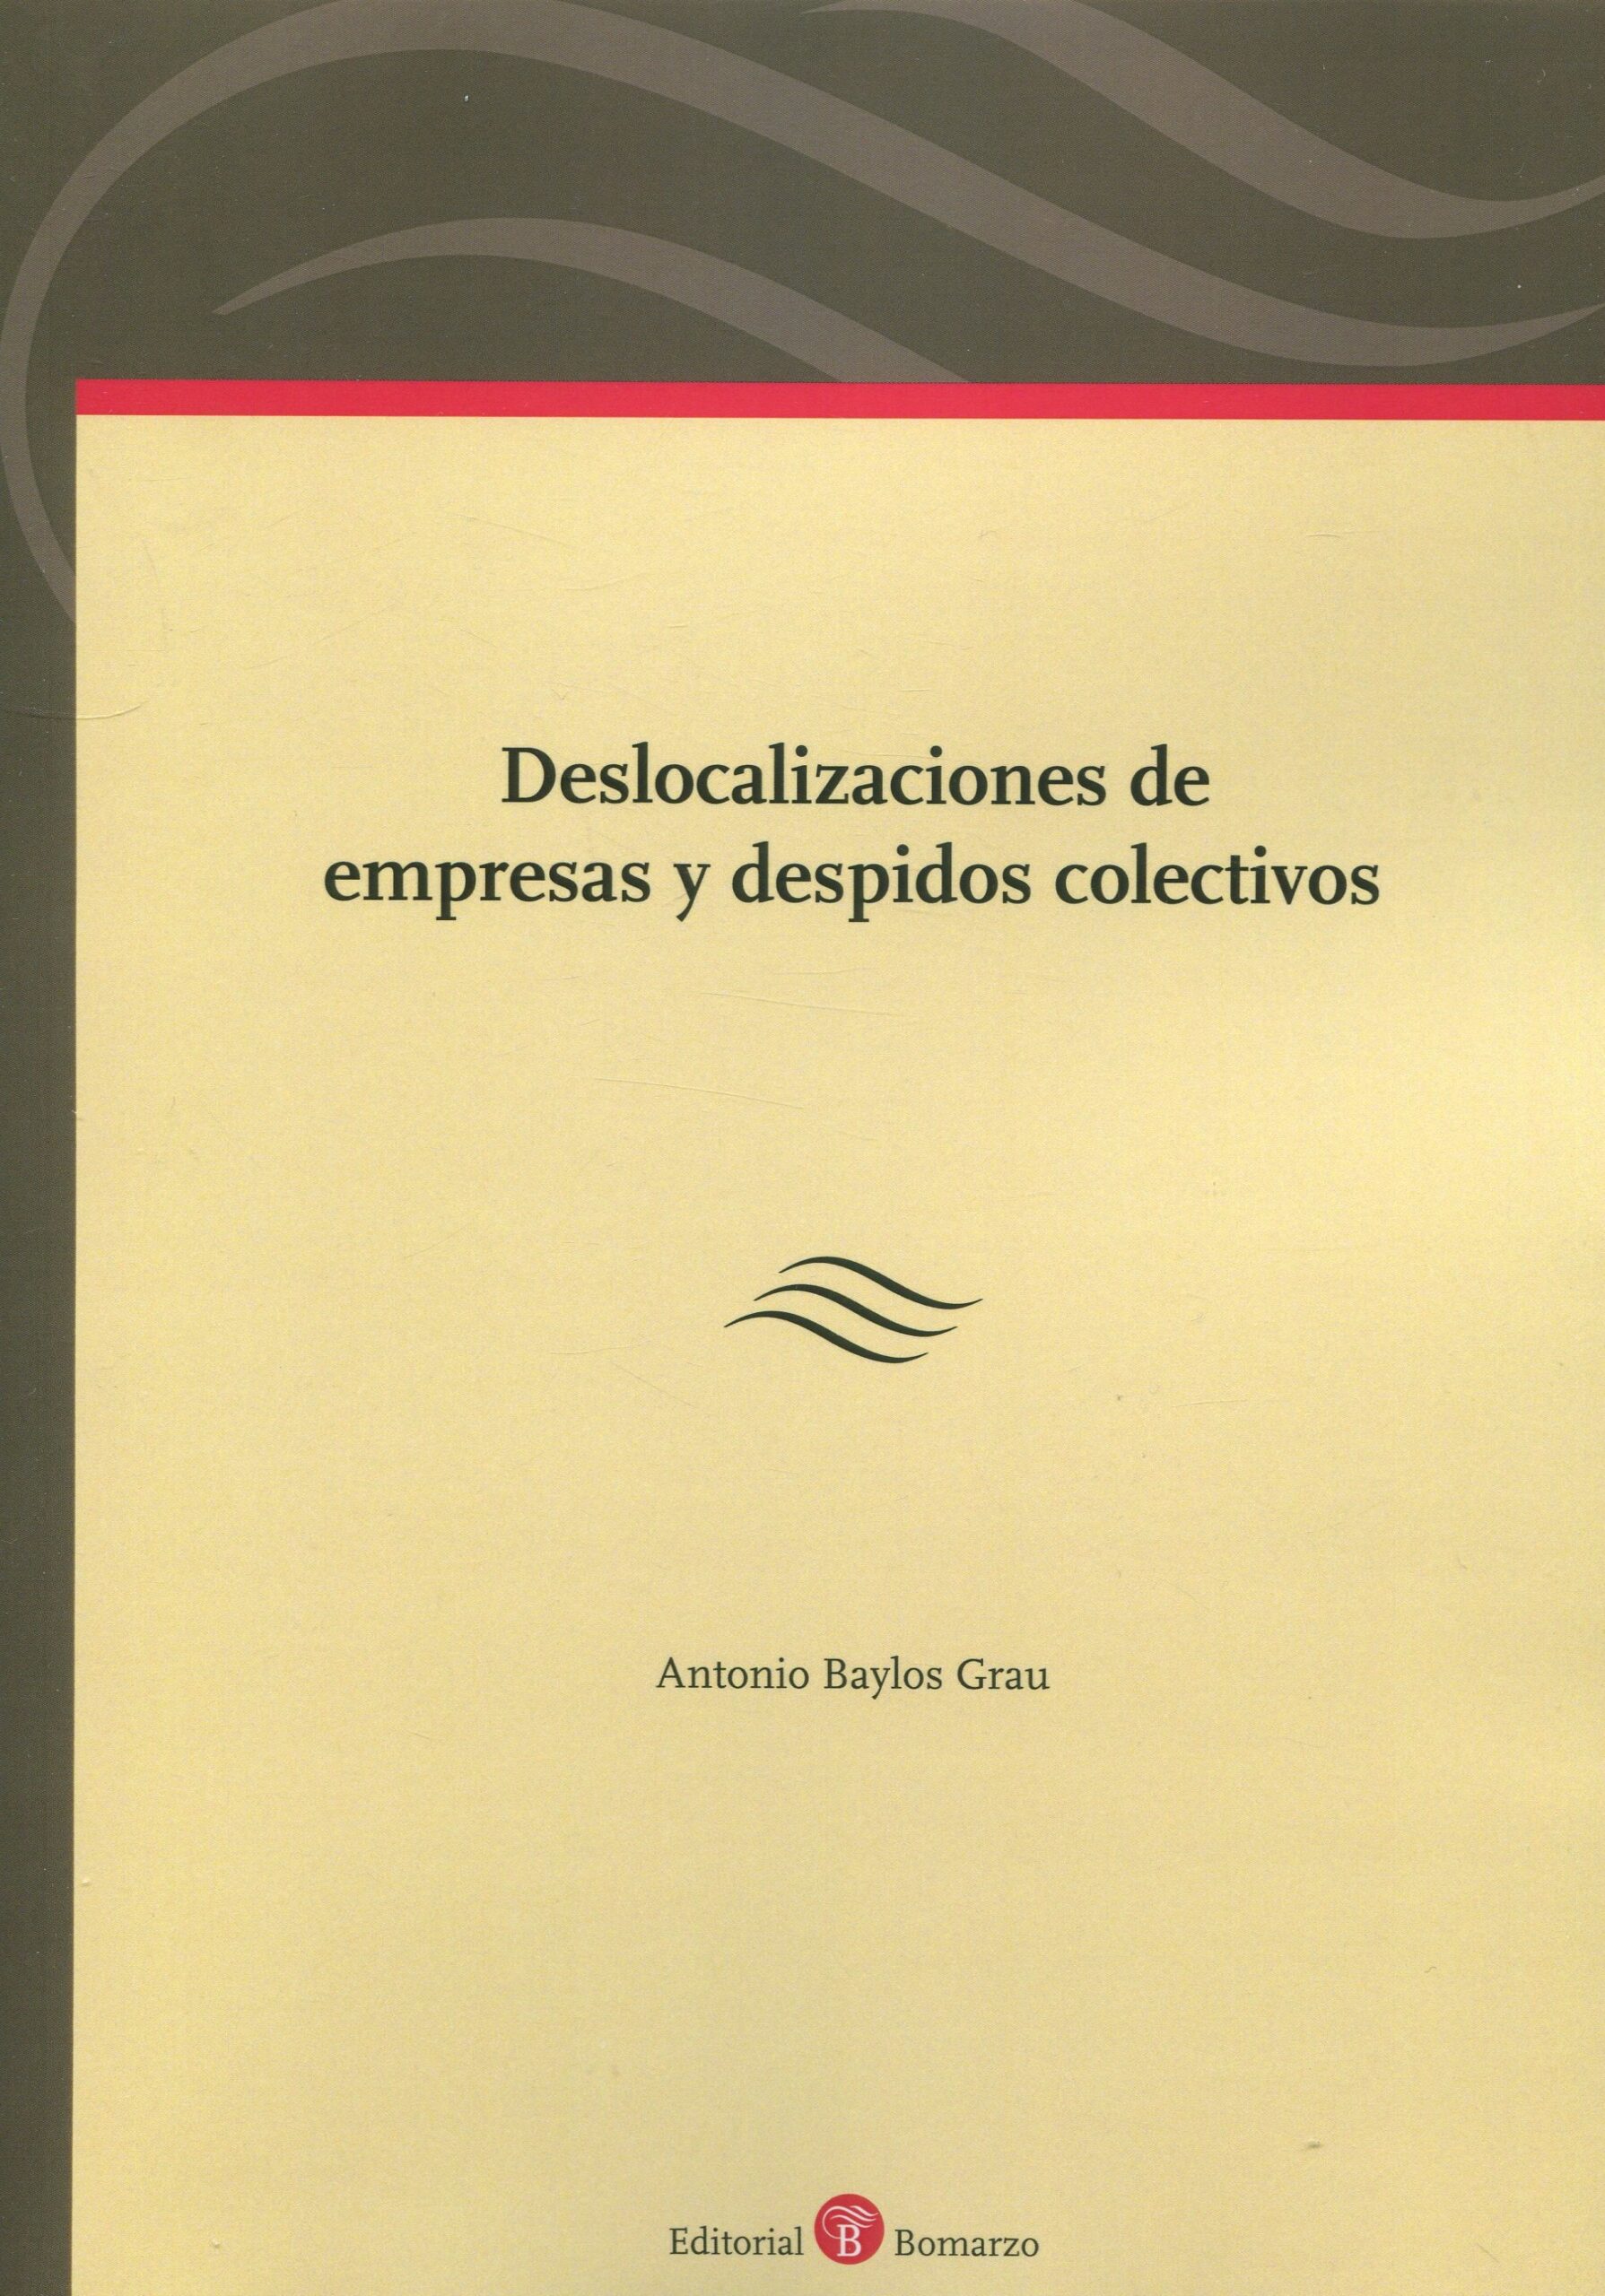 Imagen de portada del libro Deslocalizaciónes de empresas y despidos colectivos